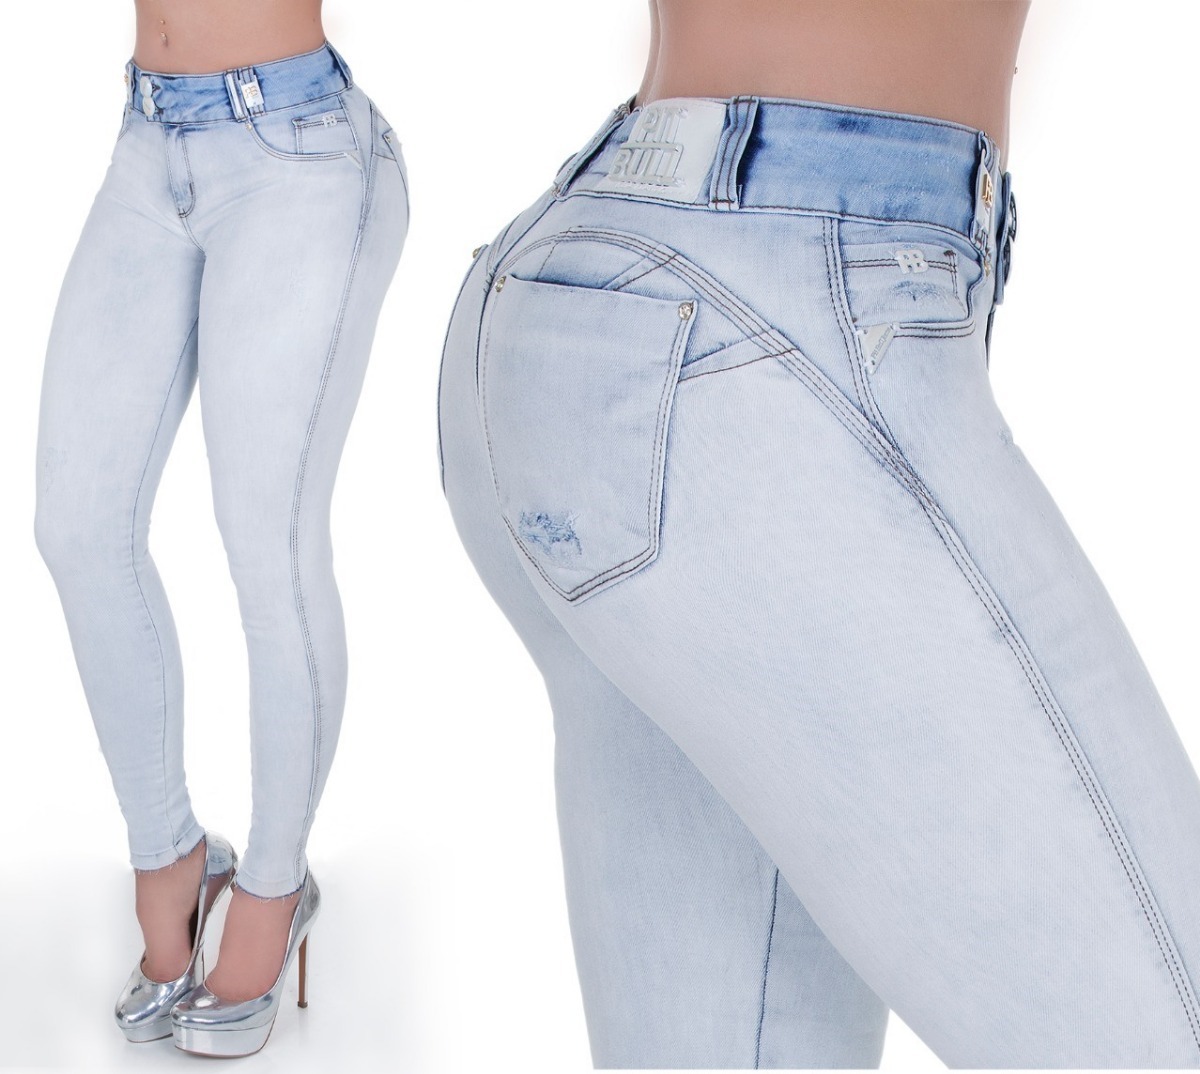 calças jeans pitbull feminina mercado livre